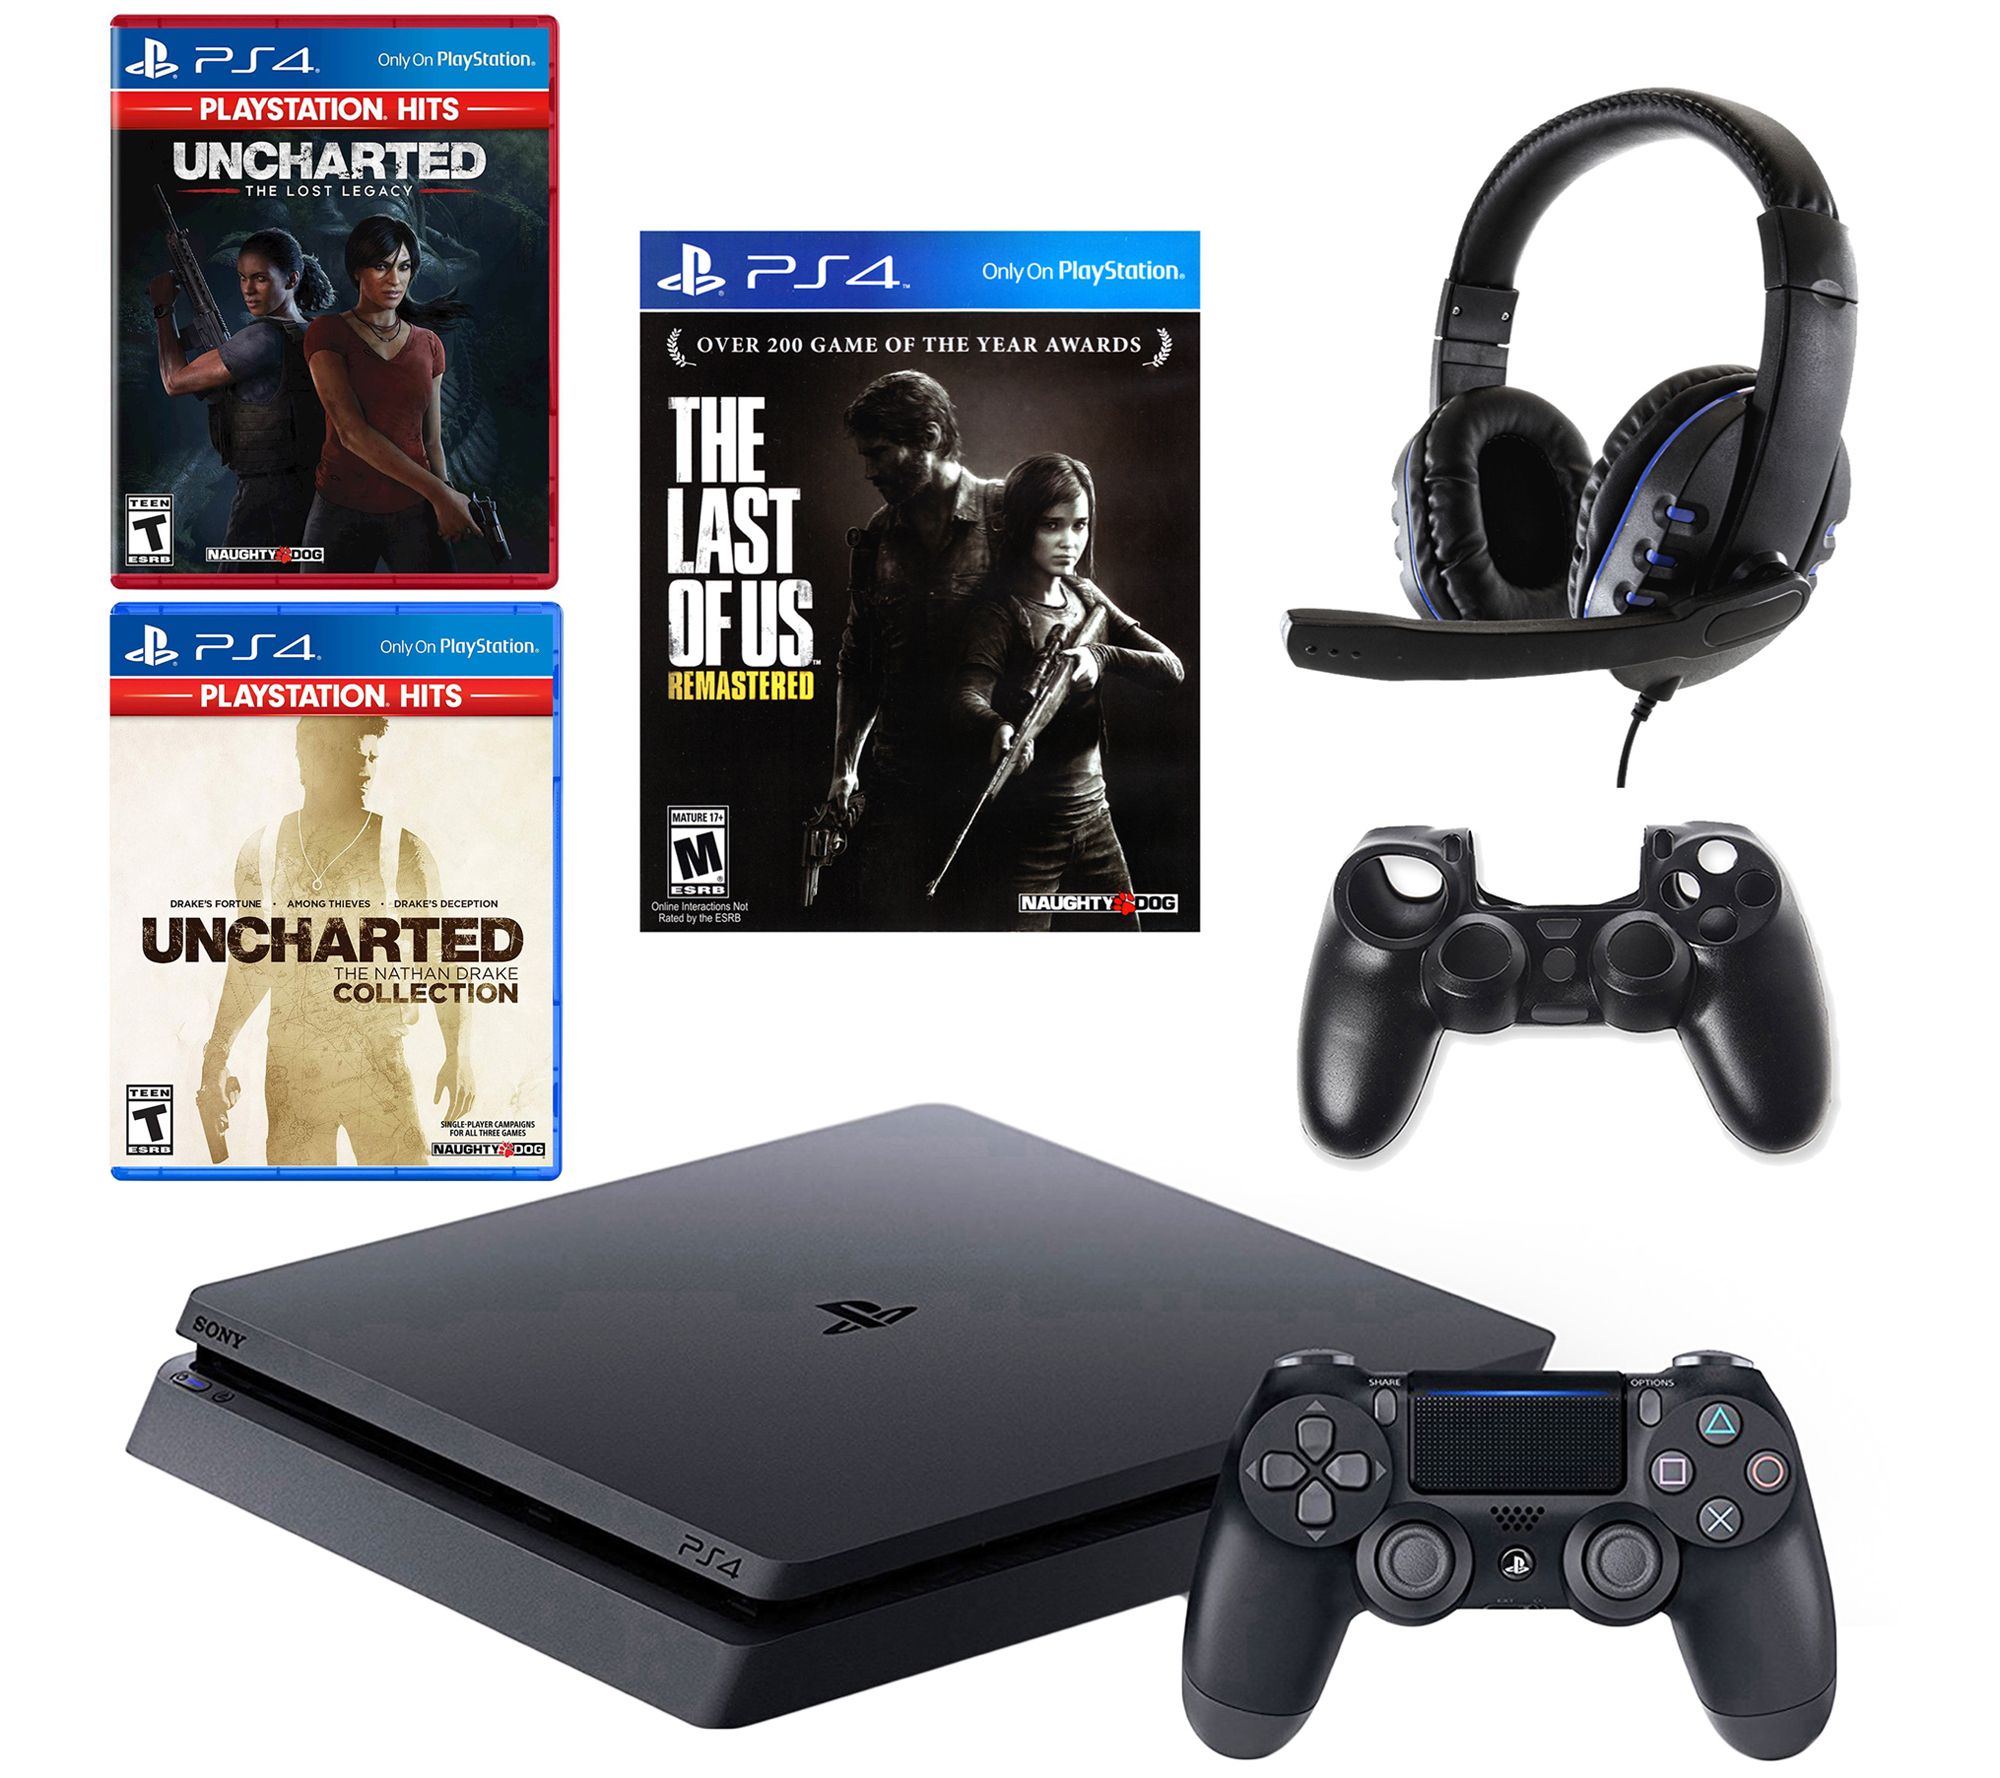 ventilator gradvist Arv PS4 w/ The Last of Us, 2 Uncharted Games &Accessories - QVC.com